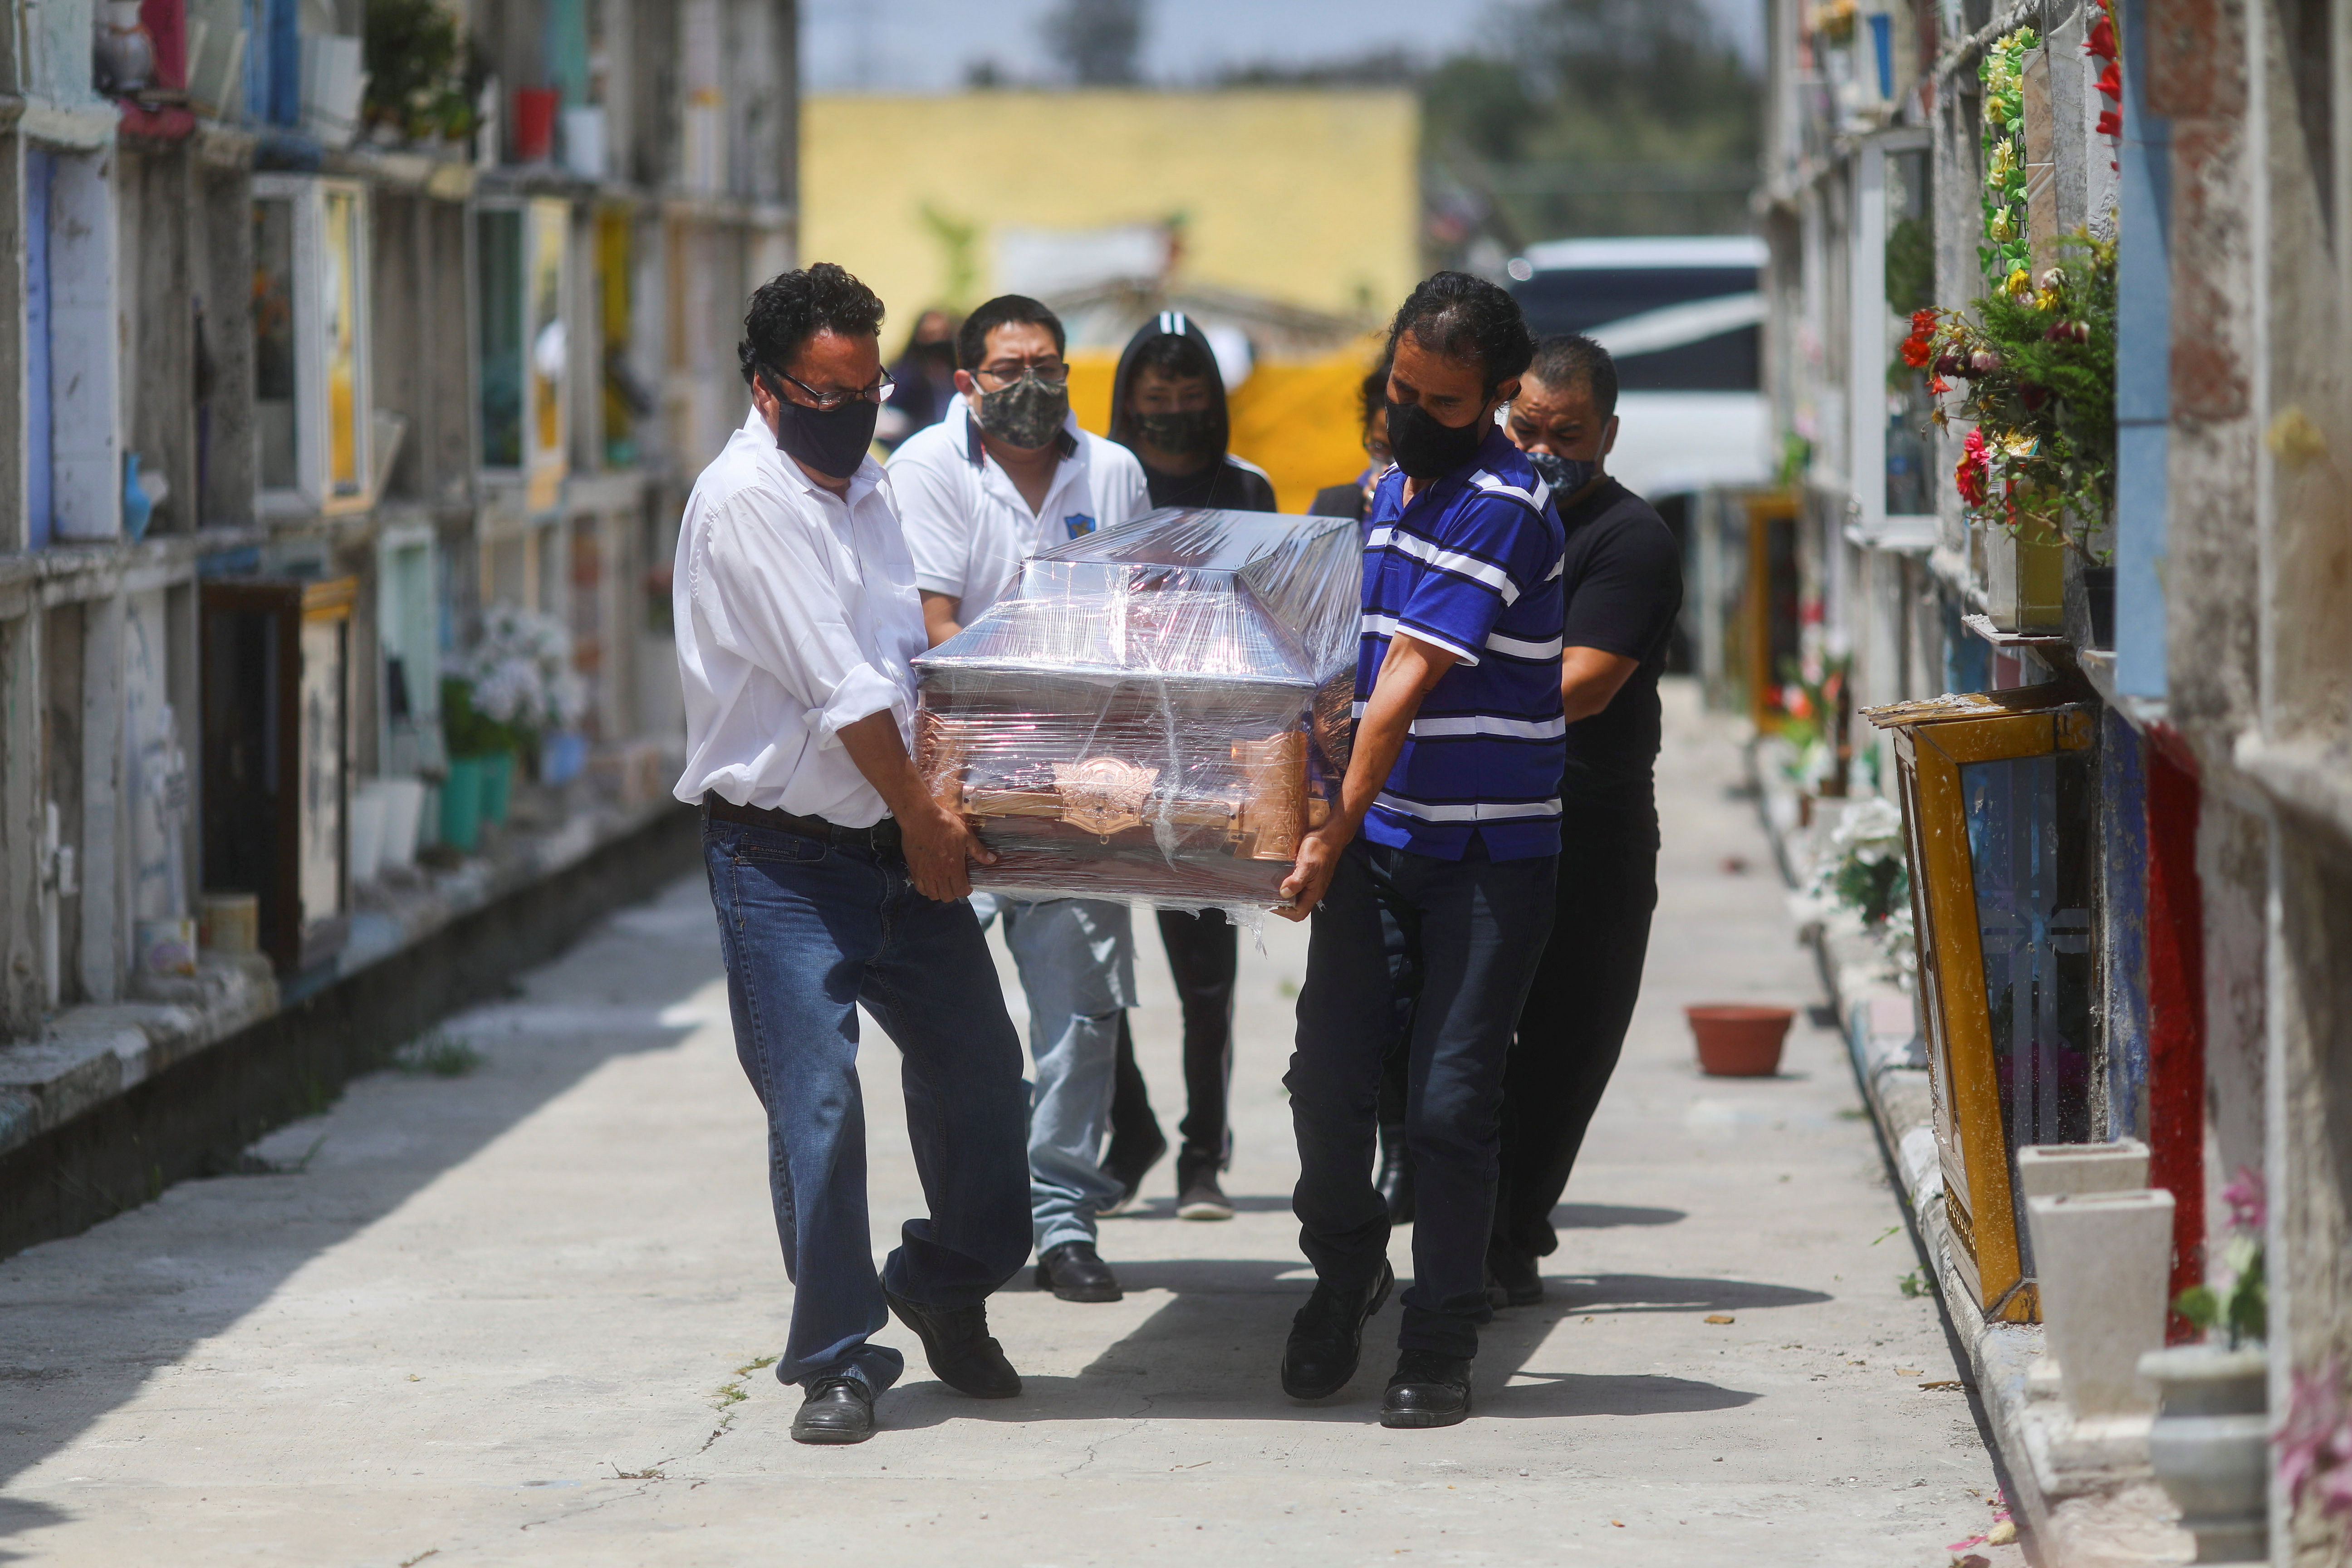 Parientes llevan el ataúd de María Eugenia, de 71 años, que murió de la enfermedad coronavirus (COVID-19), durante su funeral en el cementerio municipal de Nezahualcoyotl, Estado de México, México, el 21 de agosto de 2020. REUTERS/Edgard Garrido